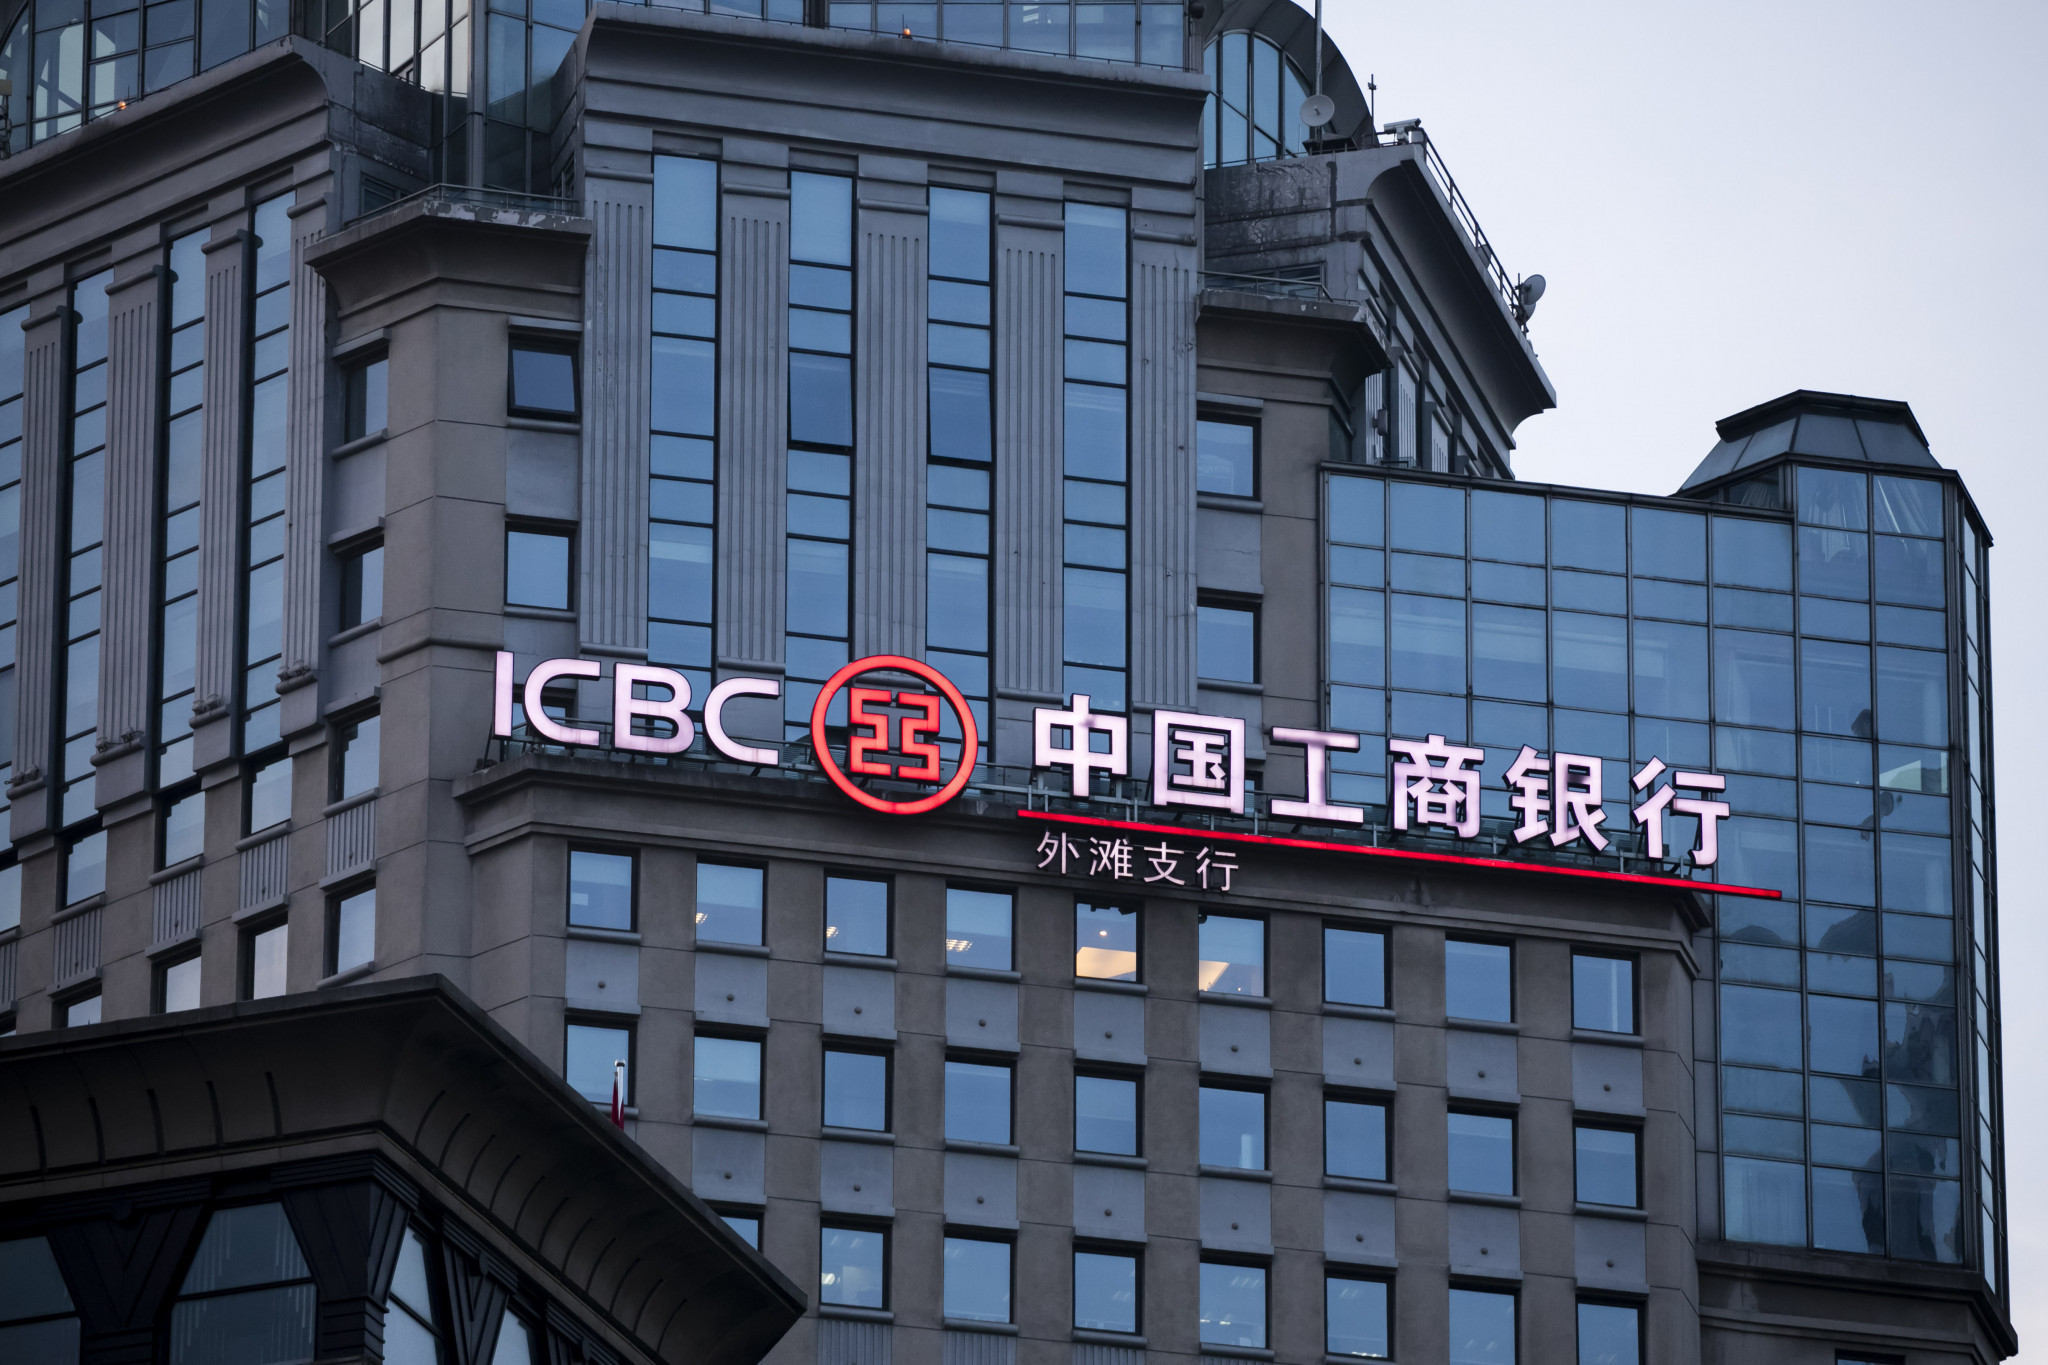 Bank of china китай. ICBC банк Китая. Индустриальный и коммерческий банк Китая. Industrial and commercial Bank of China (ICBC) банк. Банк Китая (Bank of China).